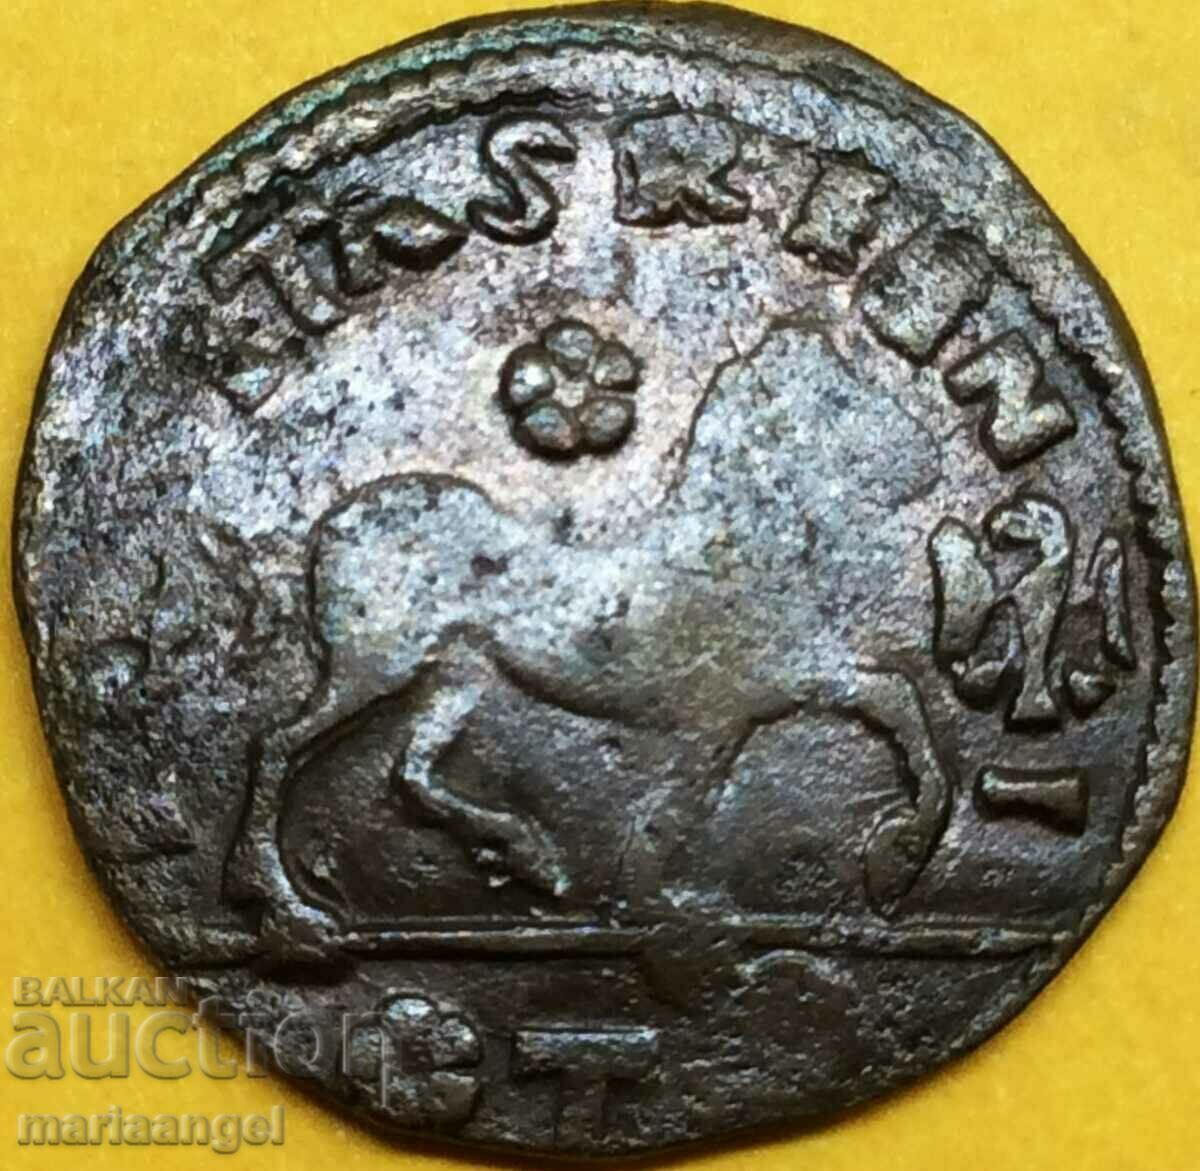 Ferdinand I al Aragonului 1 cavallo (Cohn) Aquileia Italia